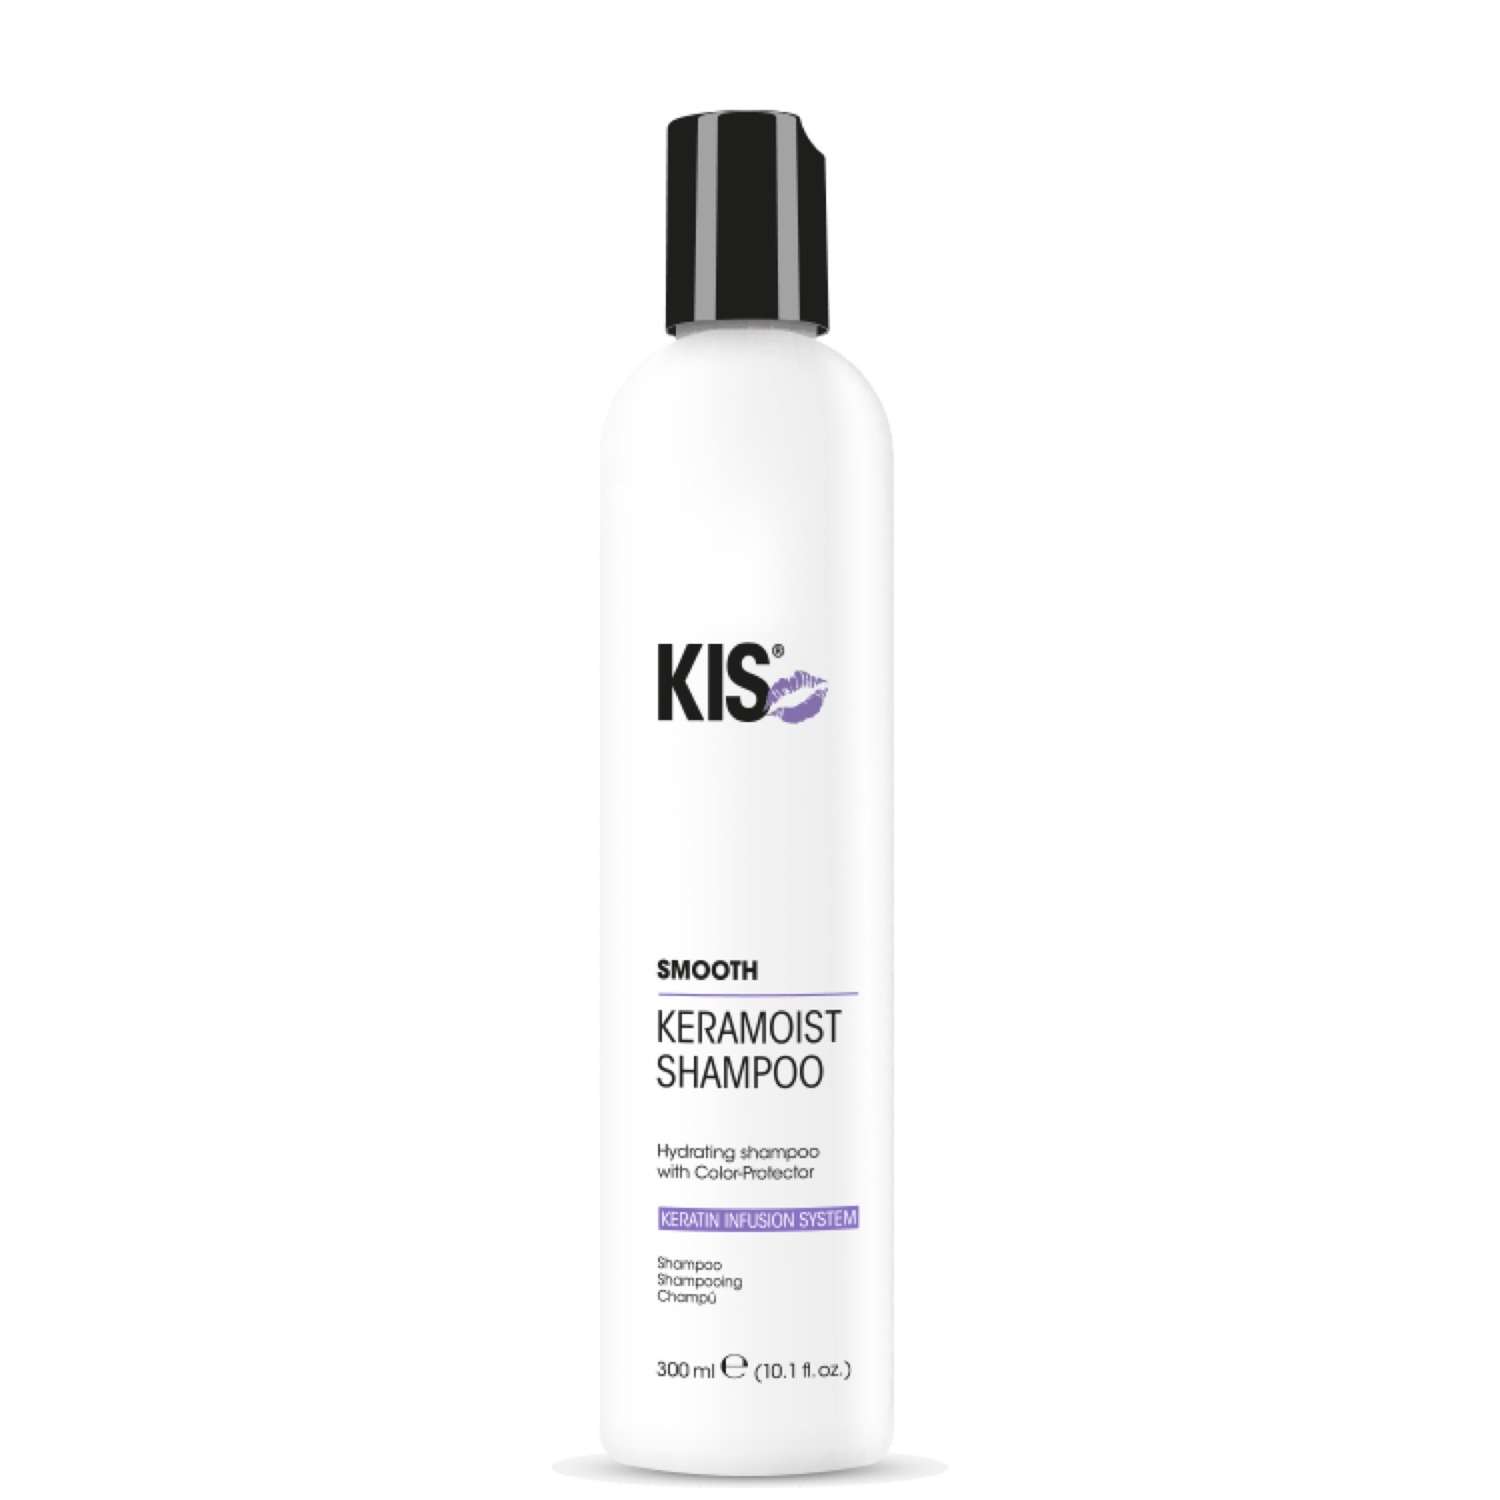 Шампунь KIS KeraMoist Shampoo - увлажняющий шампунь для сухих и ломких волос - фото 1